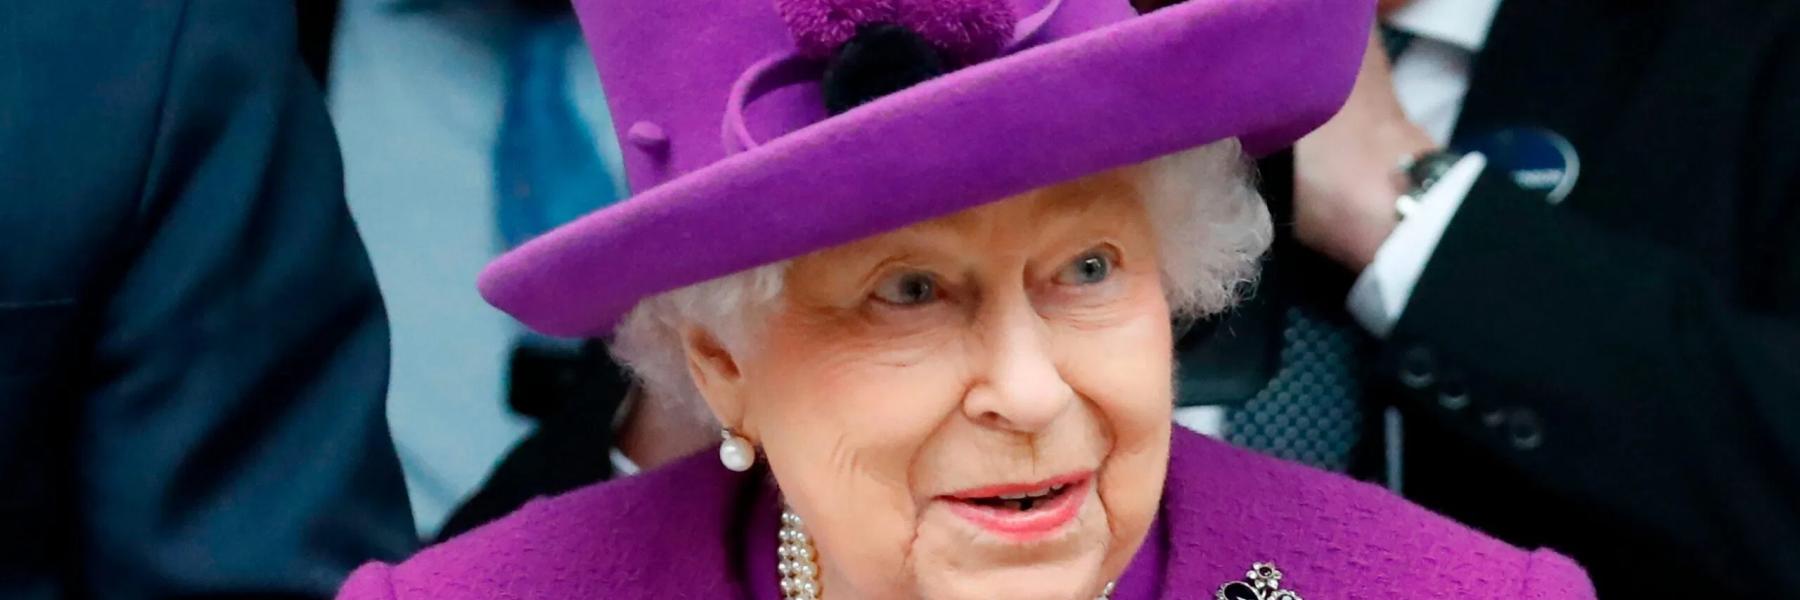 الملكة اليزابيث تصدر قرار هام بشأن مواقف الأمير هاري وميغان ماركل